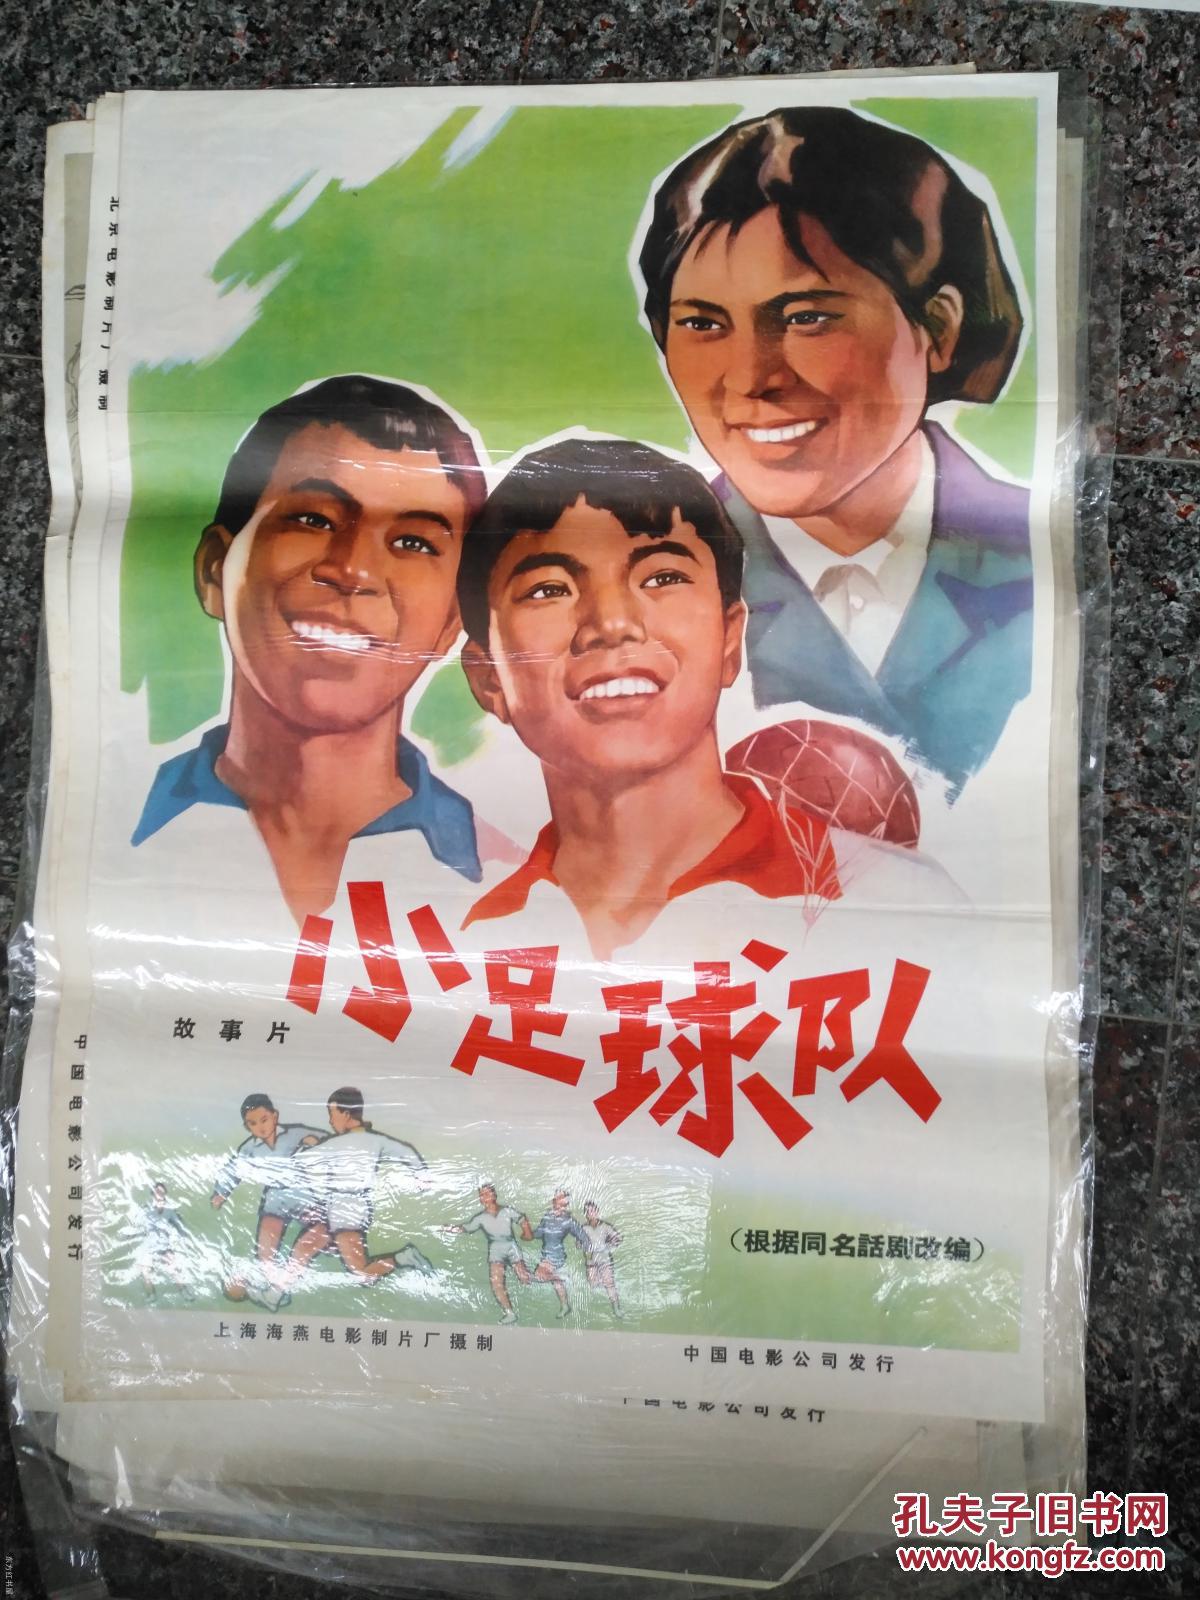 2-864、小足球队员,上海海燕电影制片厂,中国